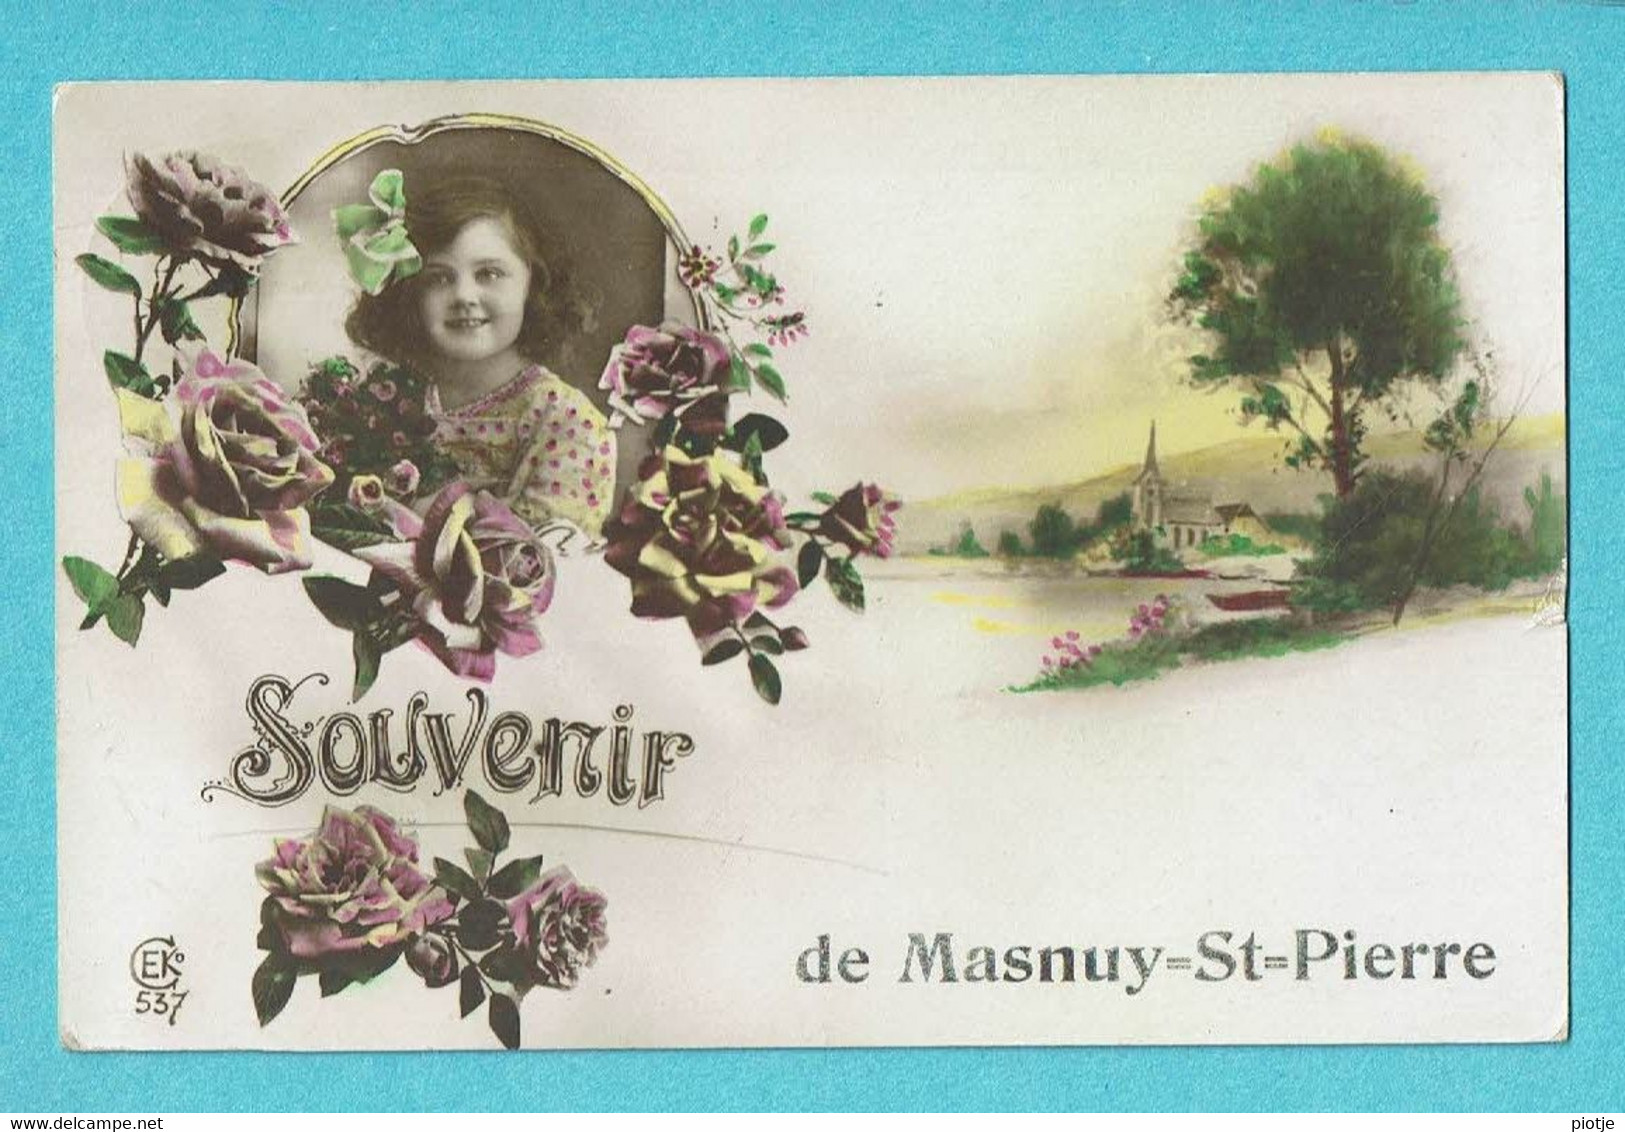 * Masnuy Saint Pierre - Jurbise (Hainaut - La Wallonie) * (EK, Nr 537) Souvenir, Fantaisie, Graine De Roses, Fleurs, TOP - Jurbise